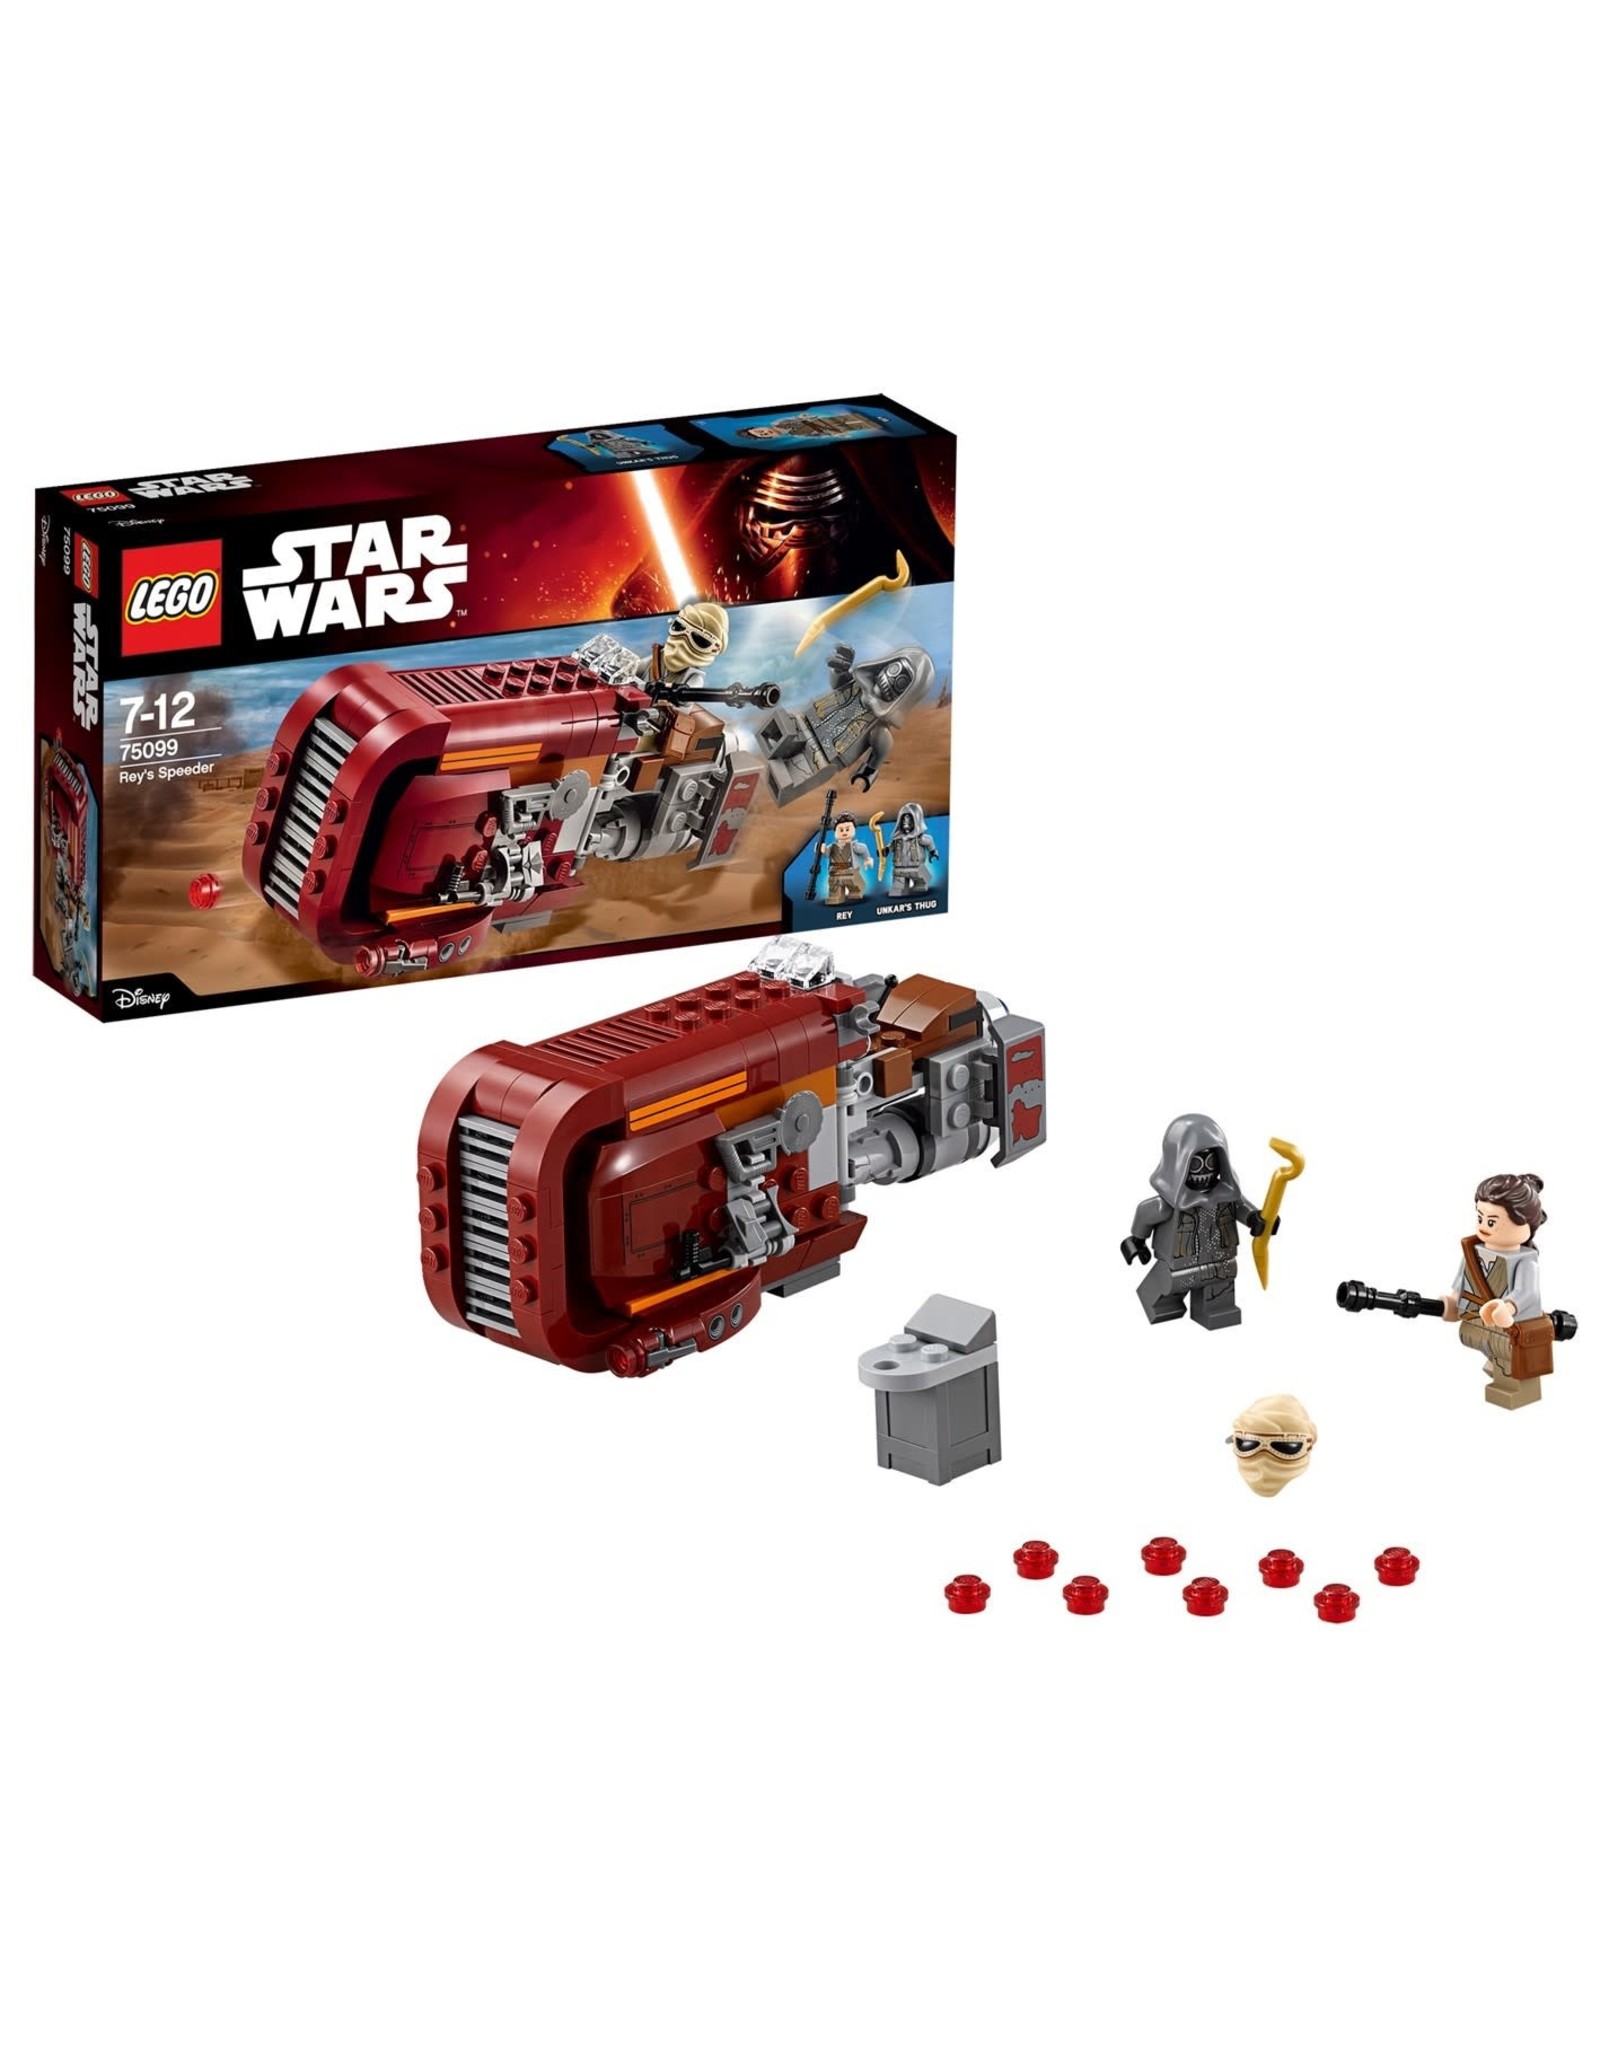 LEGO Lego Star Wars 75099 Rey's Speeder